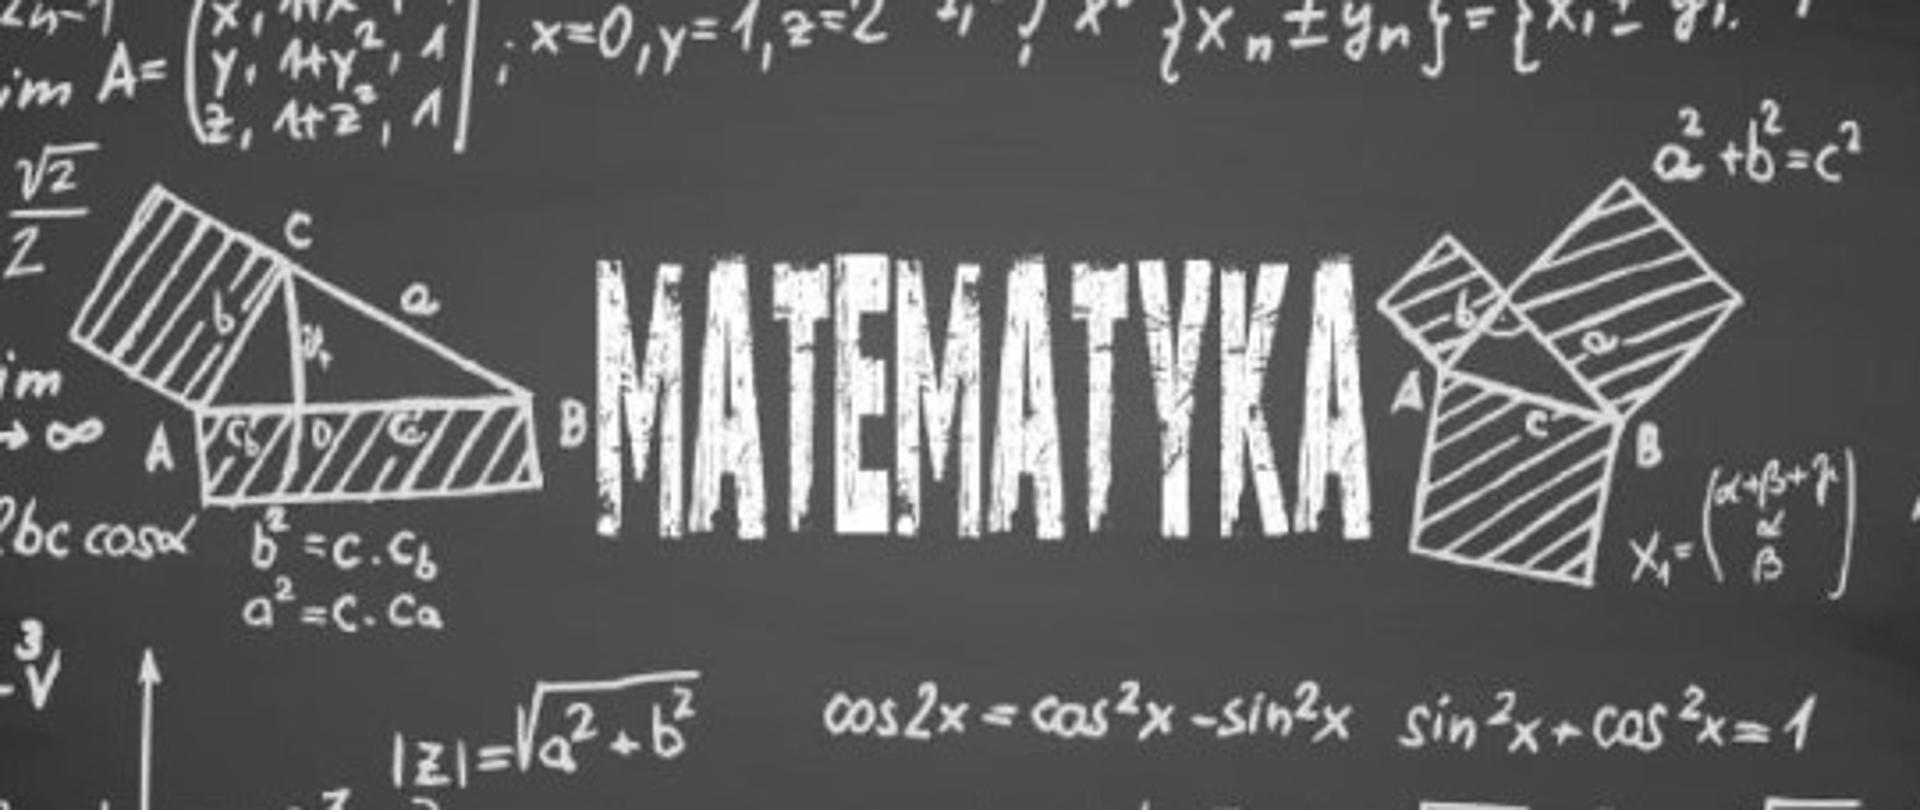 Tablica z napisem matematyka ze wzorami matematycznymi